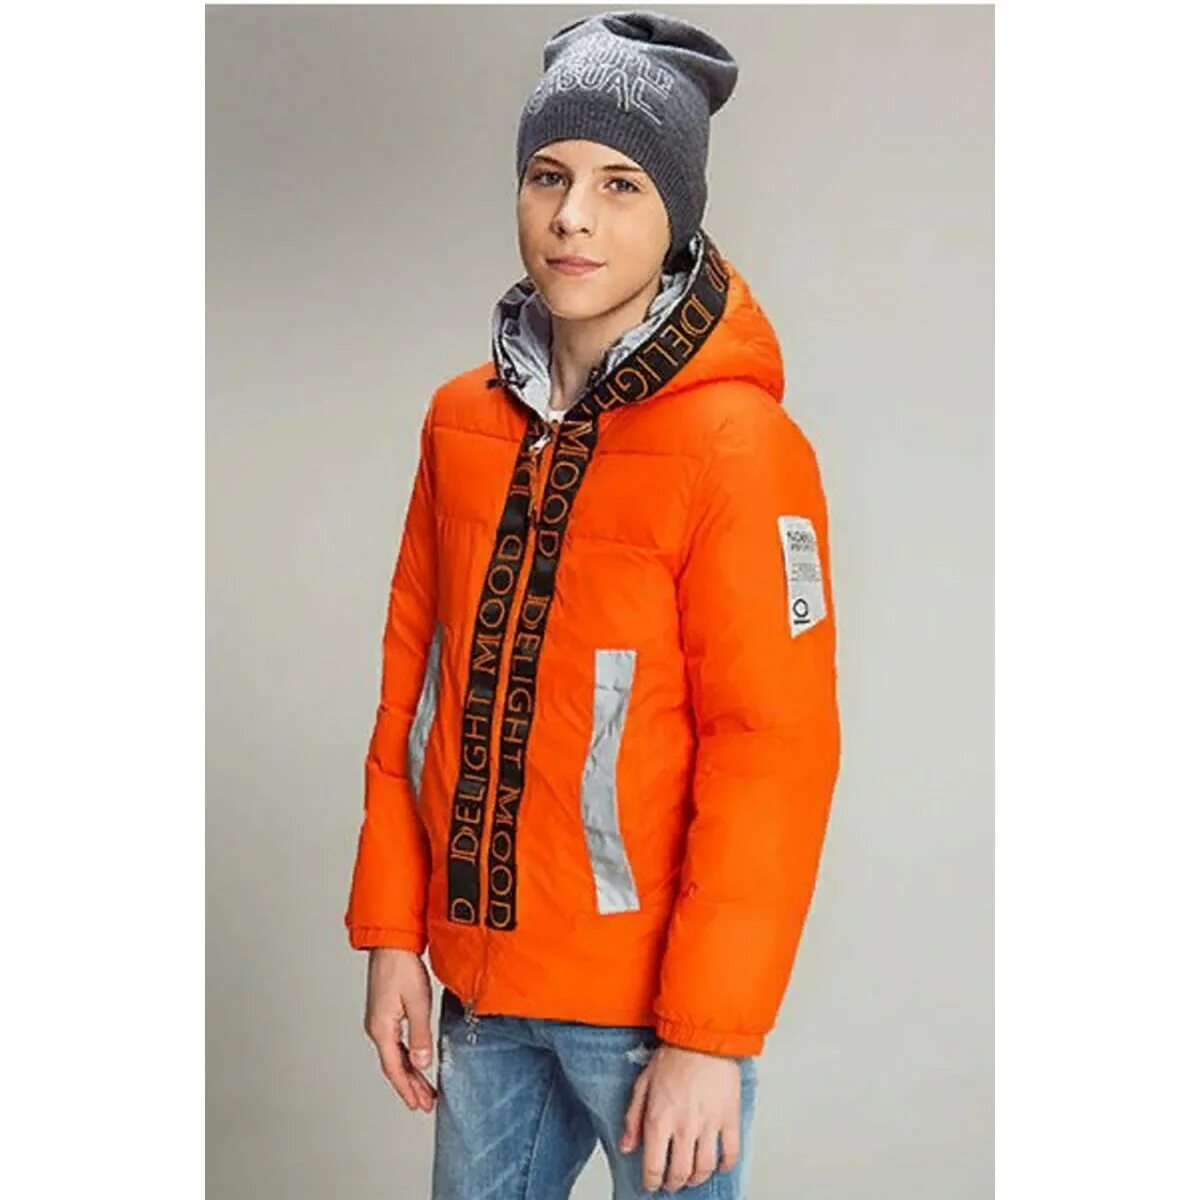 Куртка для мальчика 128. Noble people куртка демисезонная. Нобле пипл оранжевая куртка. Куртка talvi для мальчика оранжевая 2014. Оранжевая куртка для мальчика.